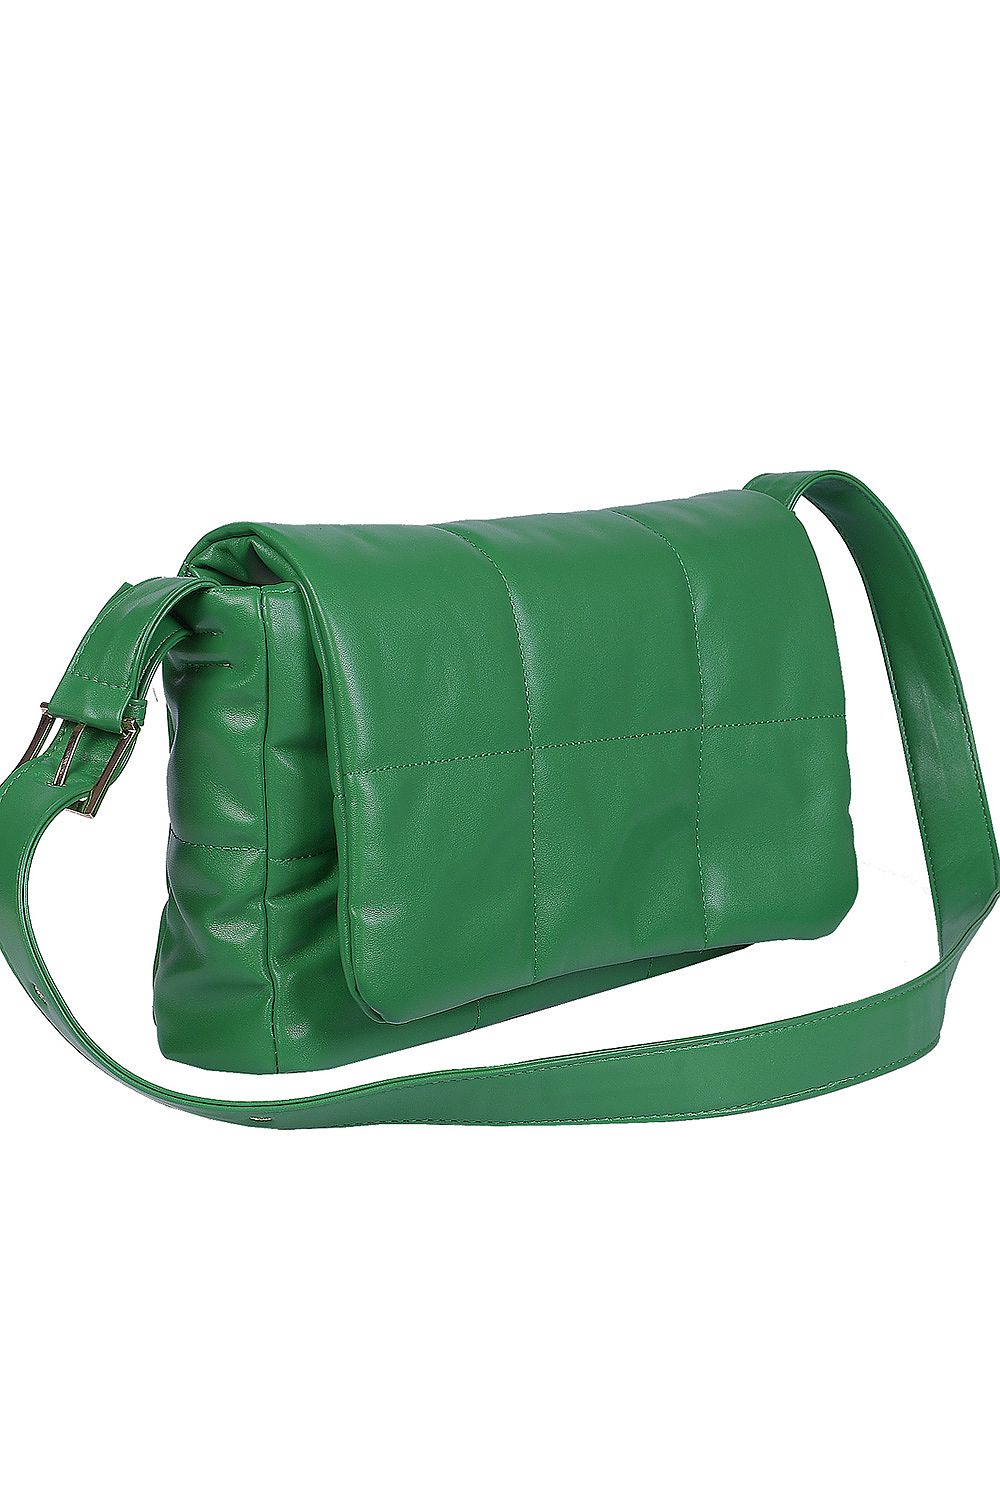 TEEK - Green Cush Everyday Handbag BAG TEEK MH   